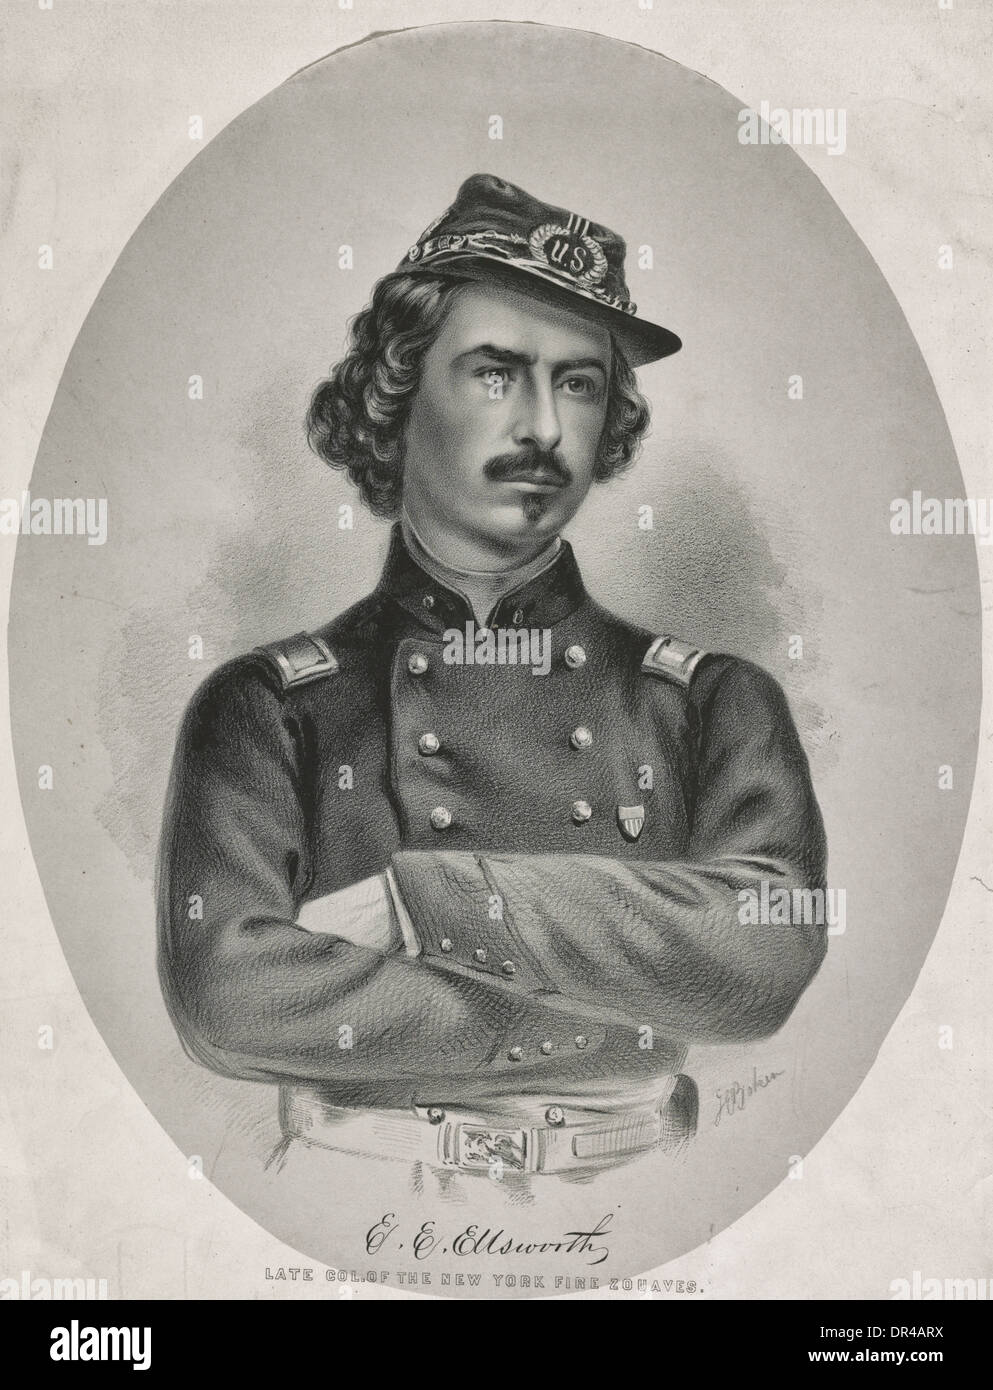 Elmer E. Ellsworth - légiste et soldat, mieux connu comme le premier endroit bien victime de la guerre civile américaine. Mai 1861 Banque D'Images